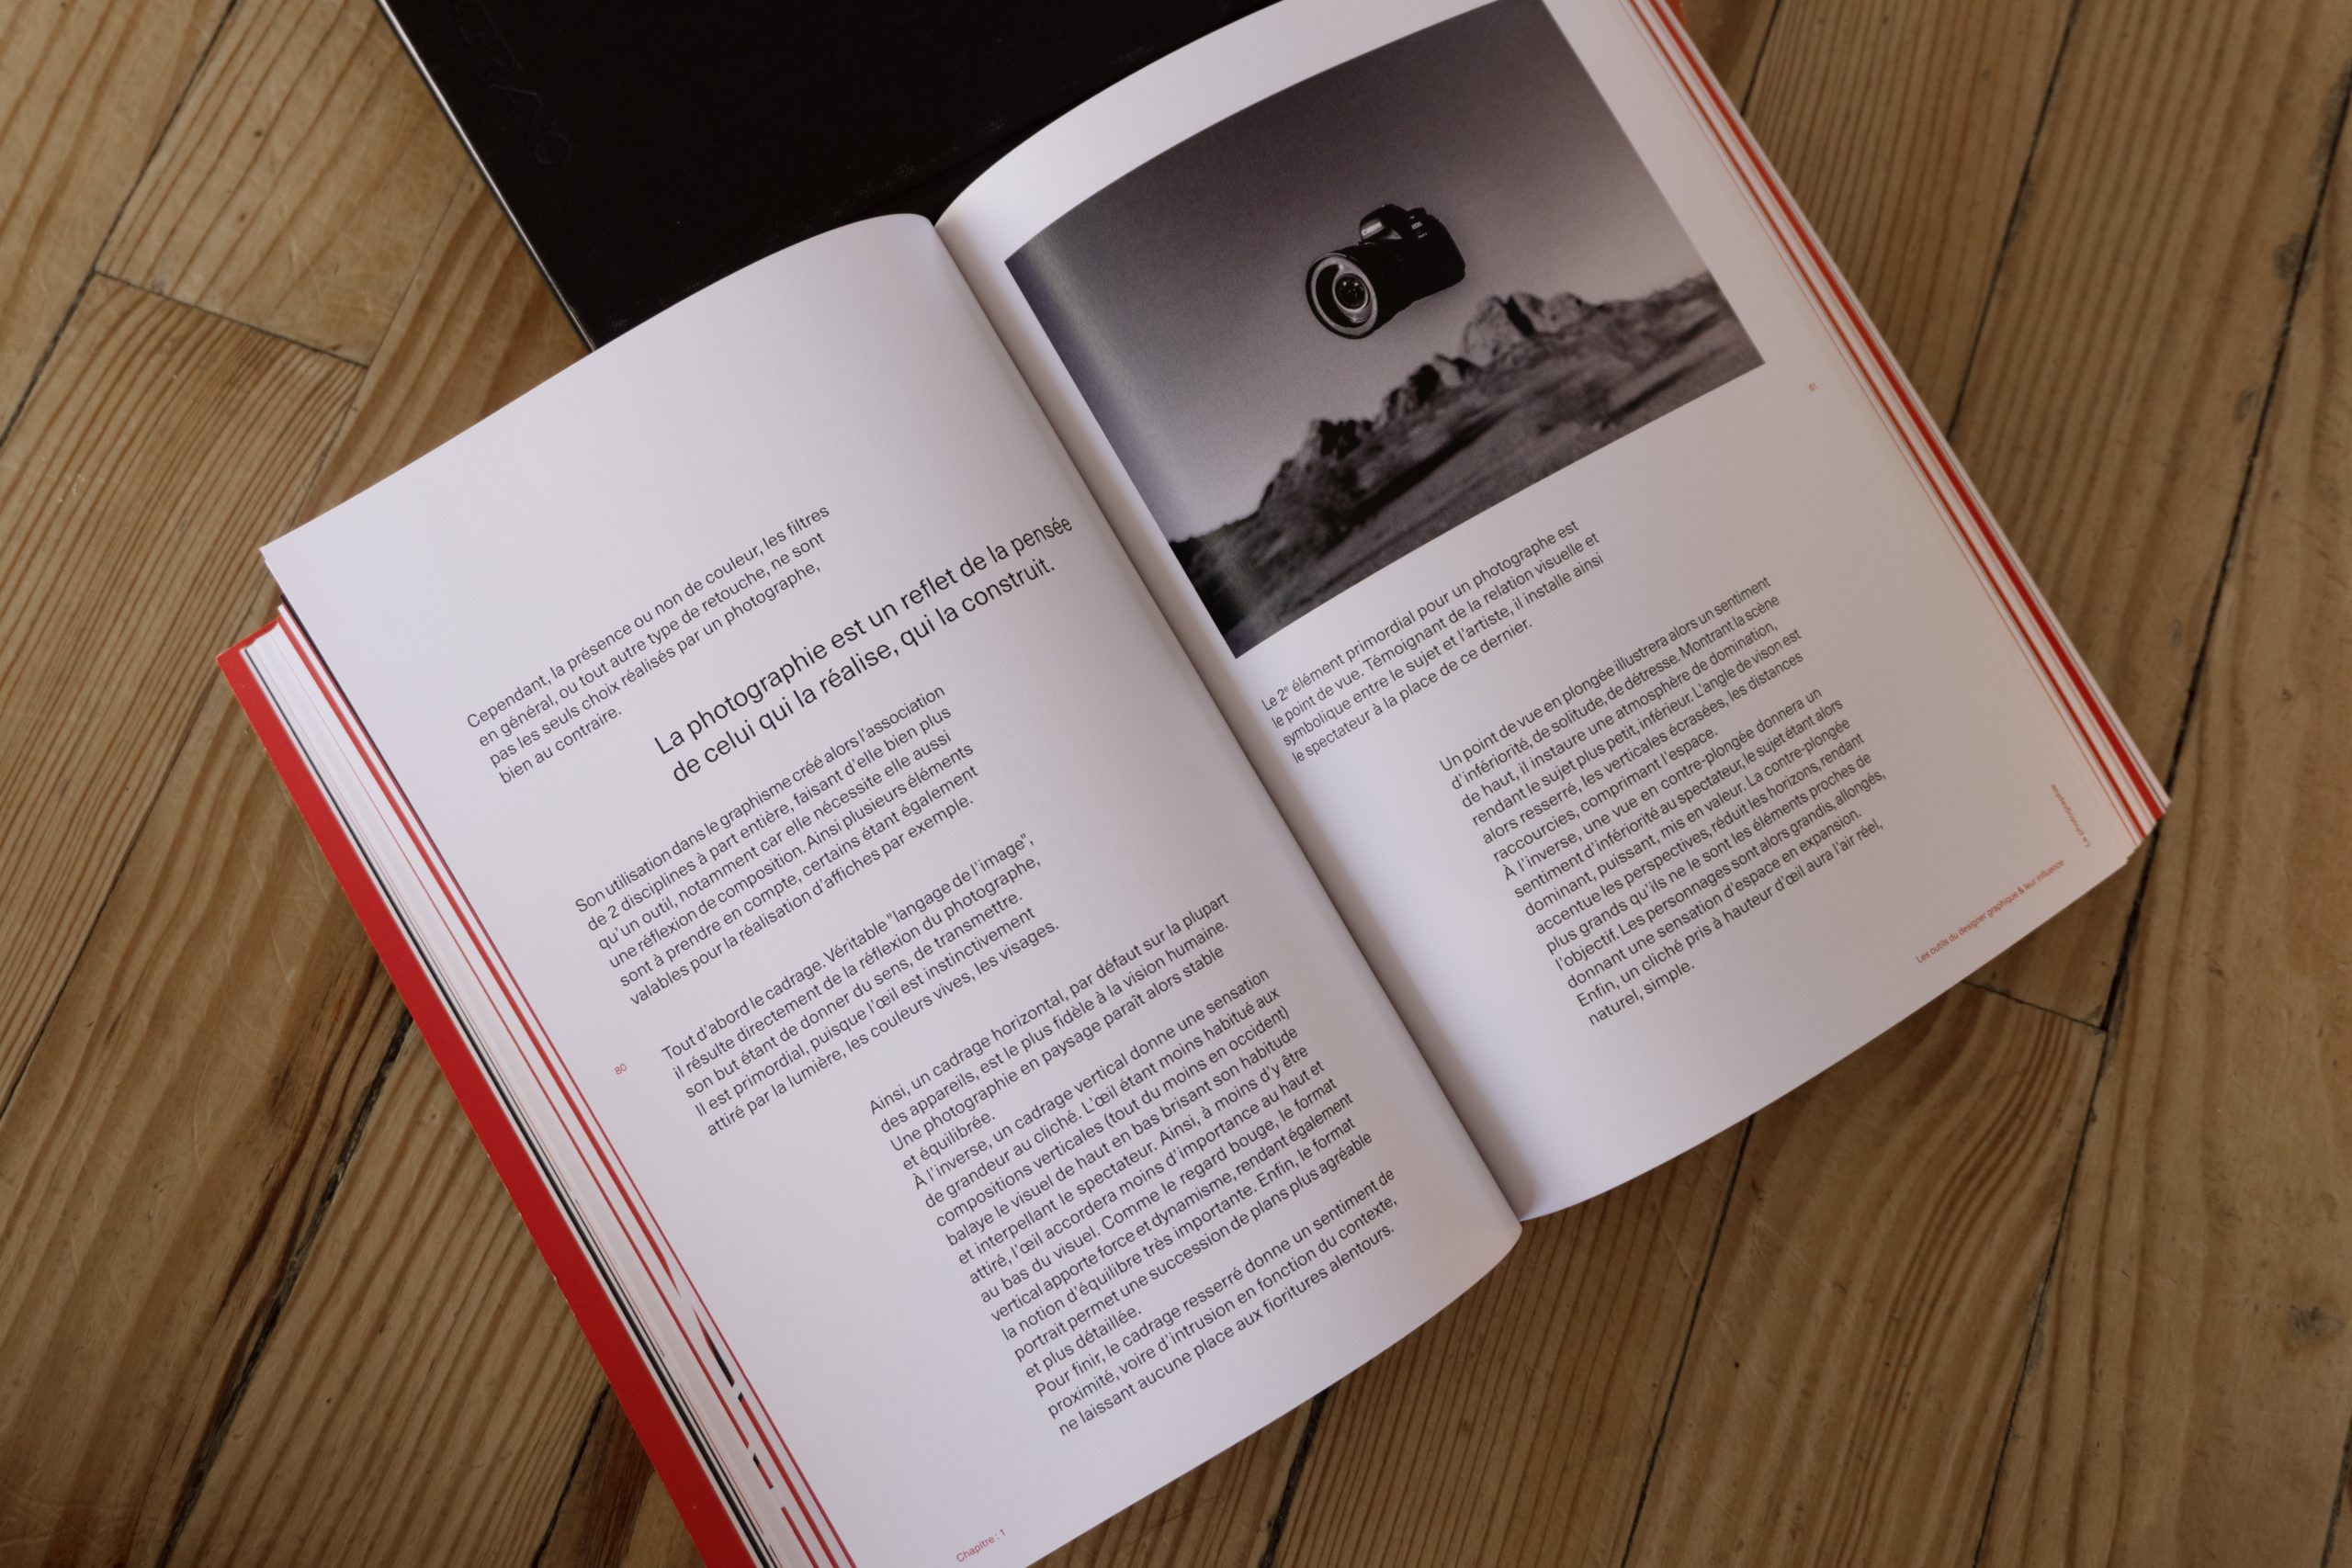 Visuel de l'intérieur du livre montrant une des double page du chapitre sur la photographie.